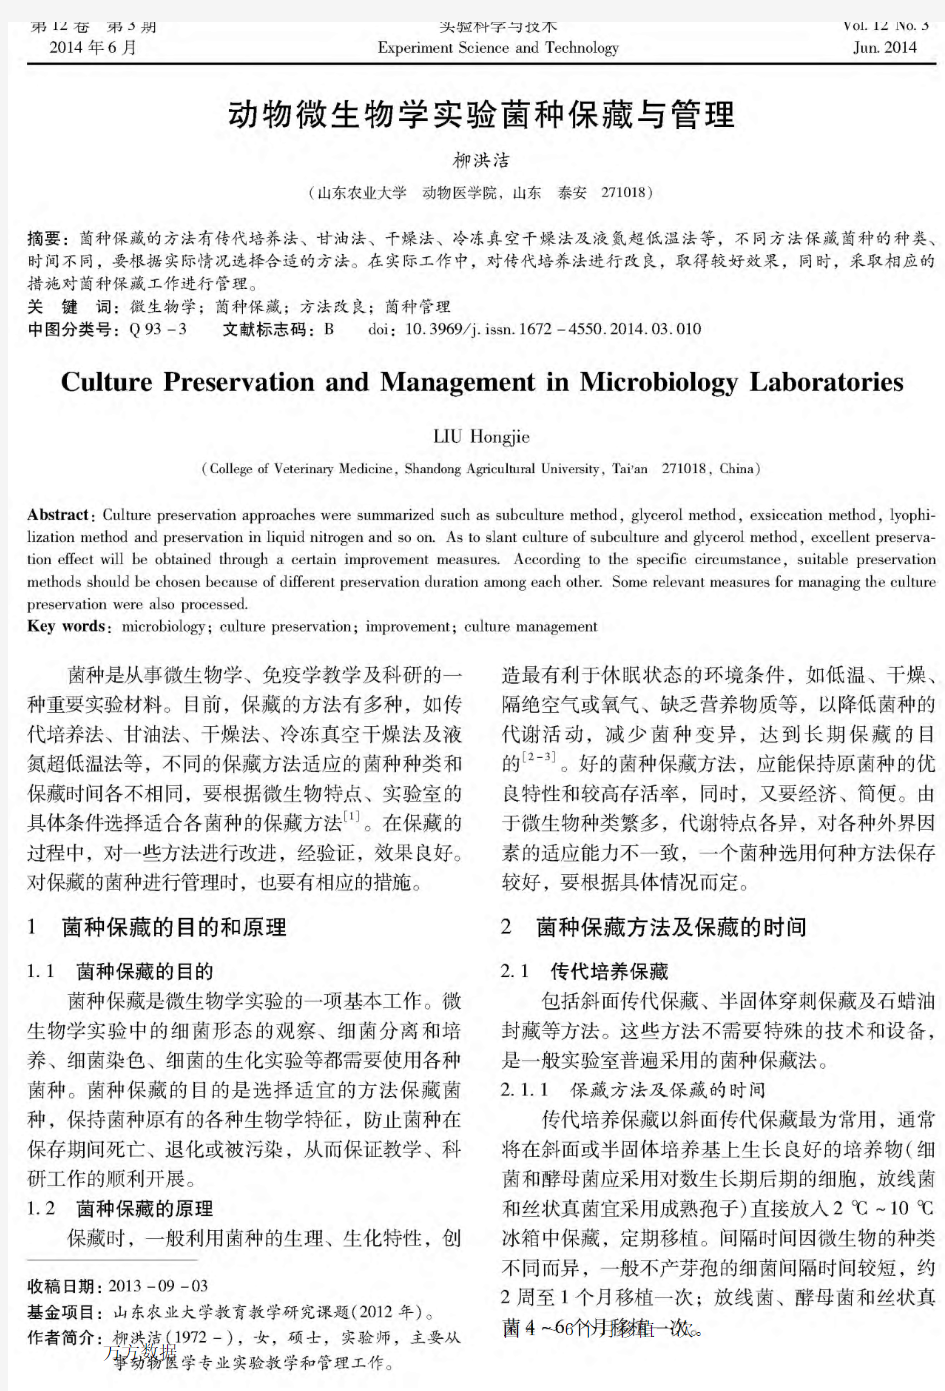 动物微生物学实验菌种保藏与管理 (1)